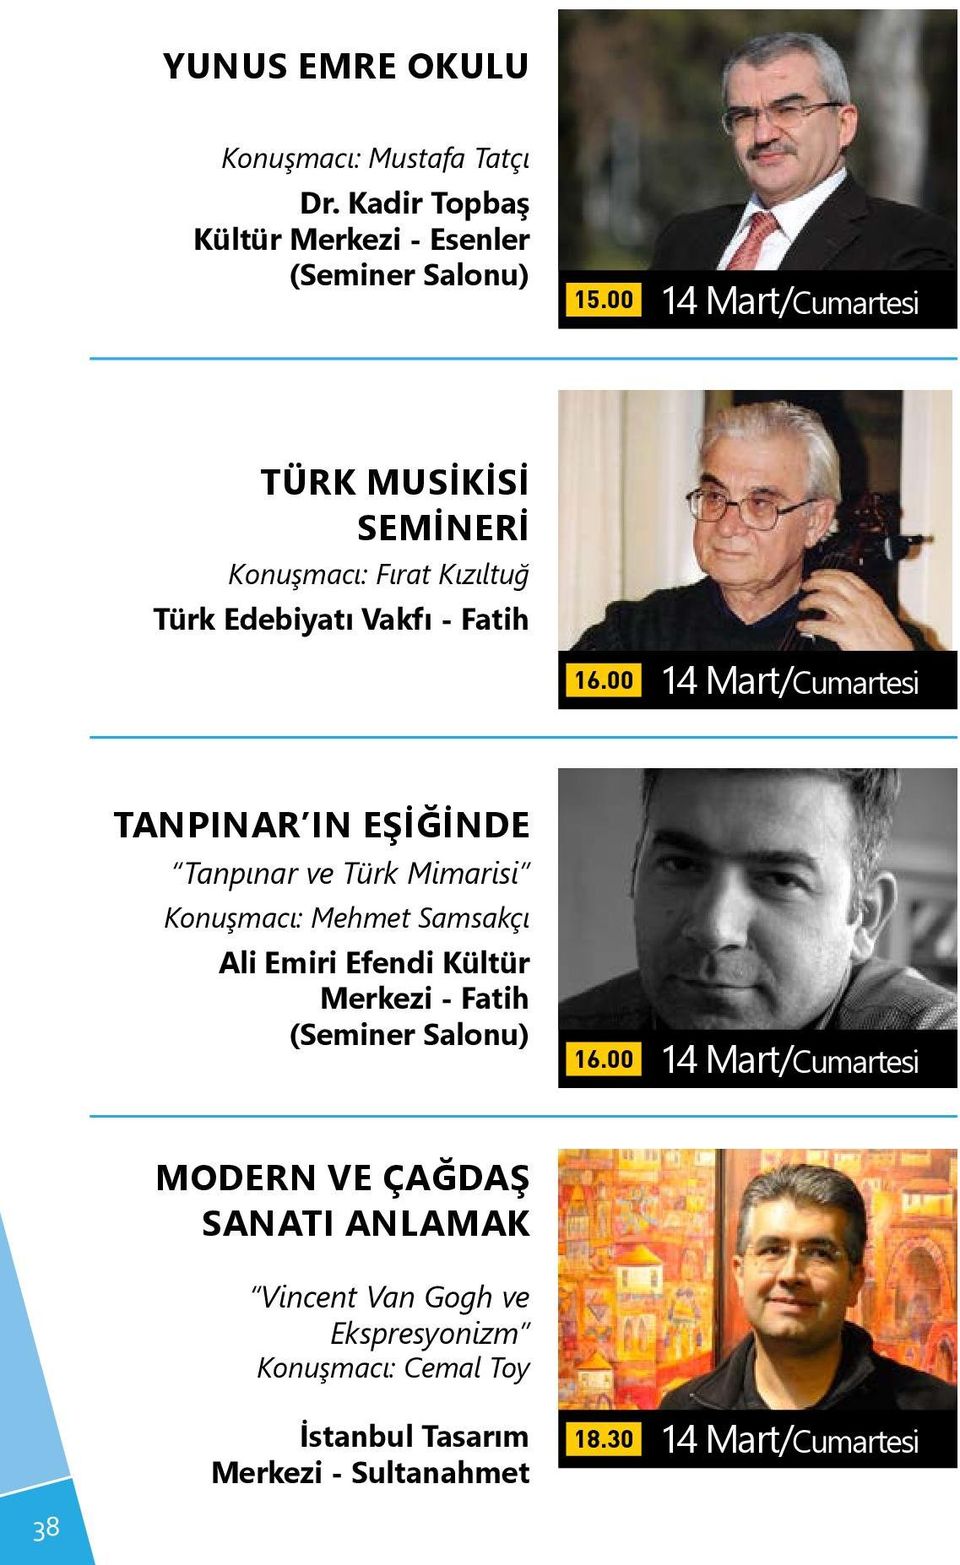 00 14 Mart/Cumartesi TANPINAR IN EŞİĞİNDE Tanpınar ve Türk Mimarisi Konuşmacı: Mehmet Samsakçı 16.